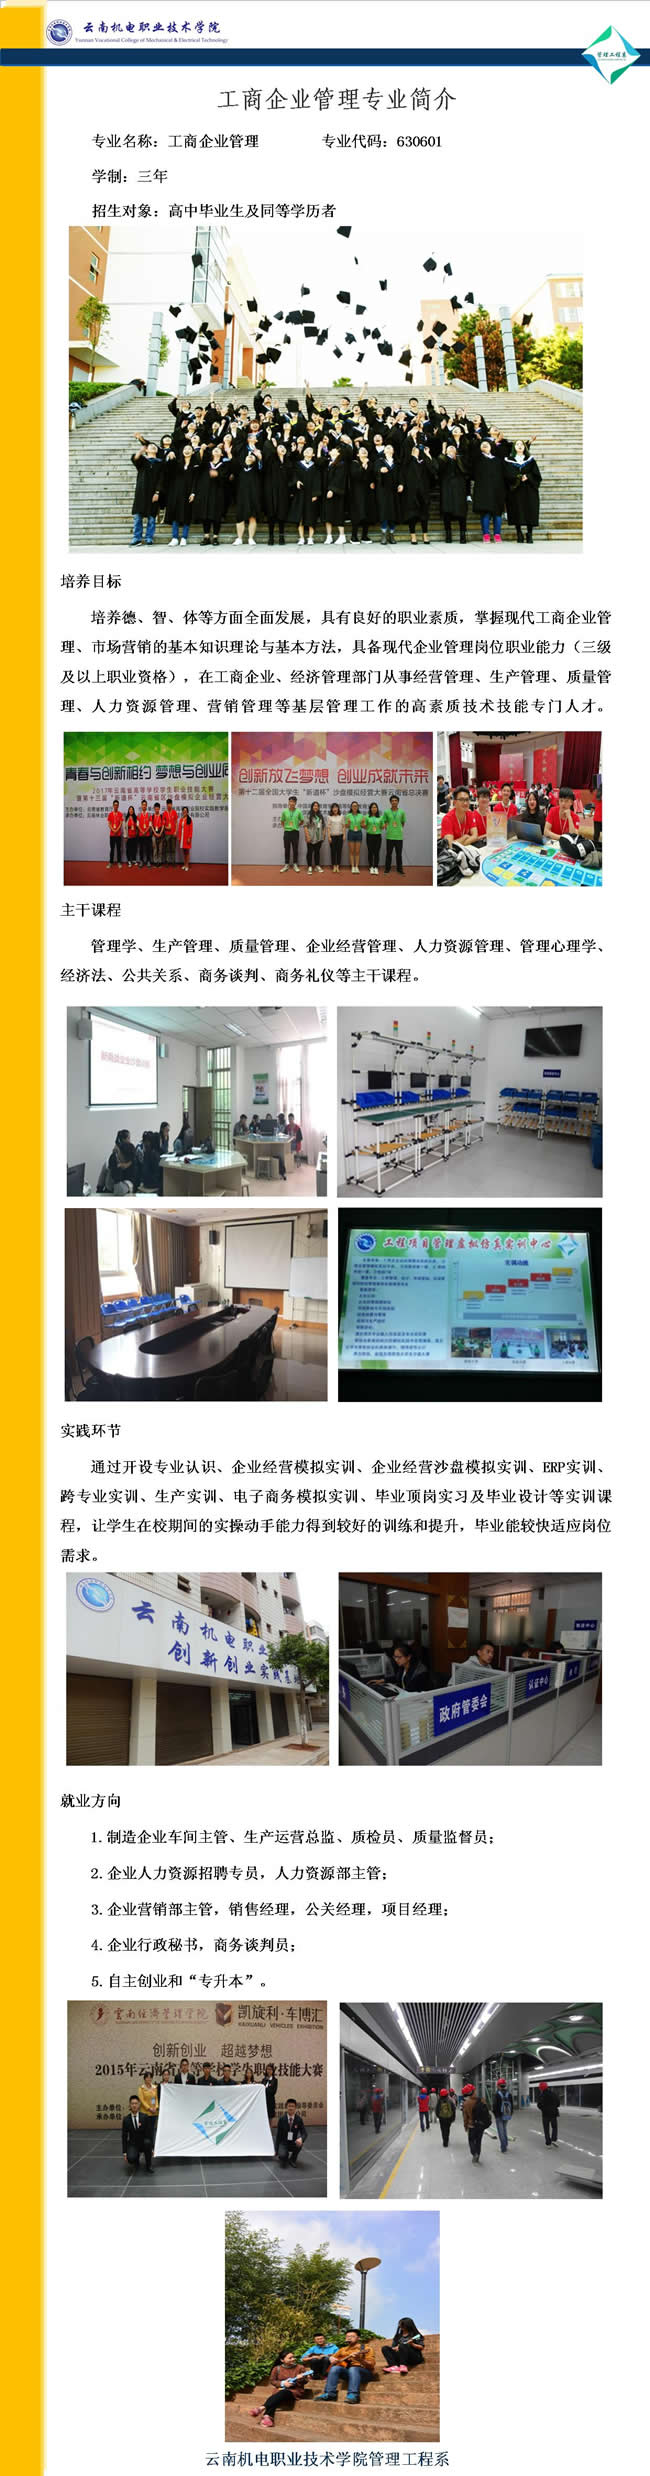 云南机电职业技术学院工商企业管理